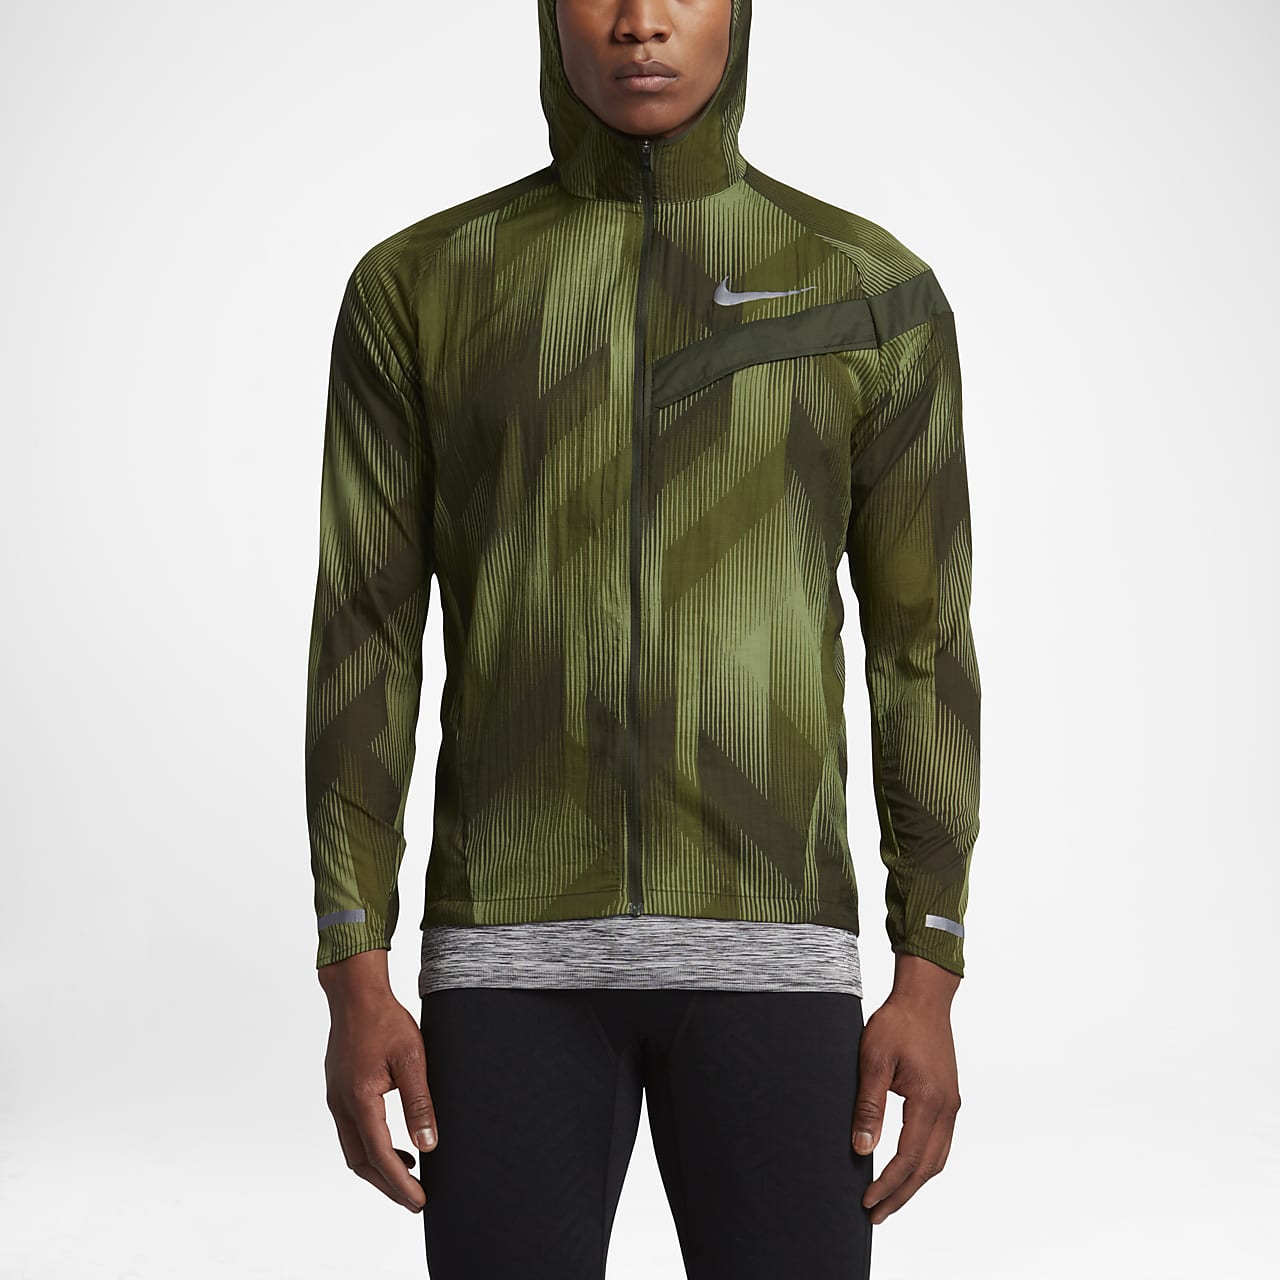 factor Oceano cobertura Nike Impossibly Light Men's Running Jacket. Nike ID